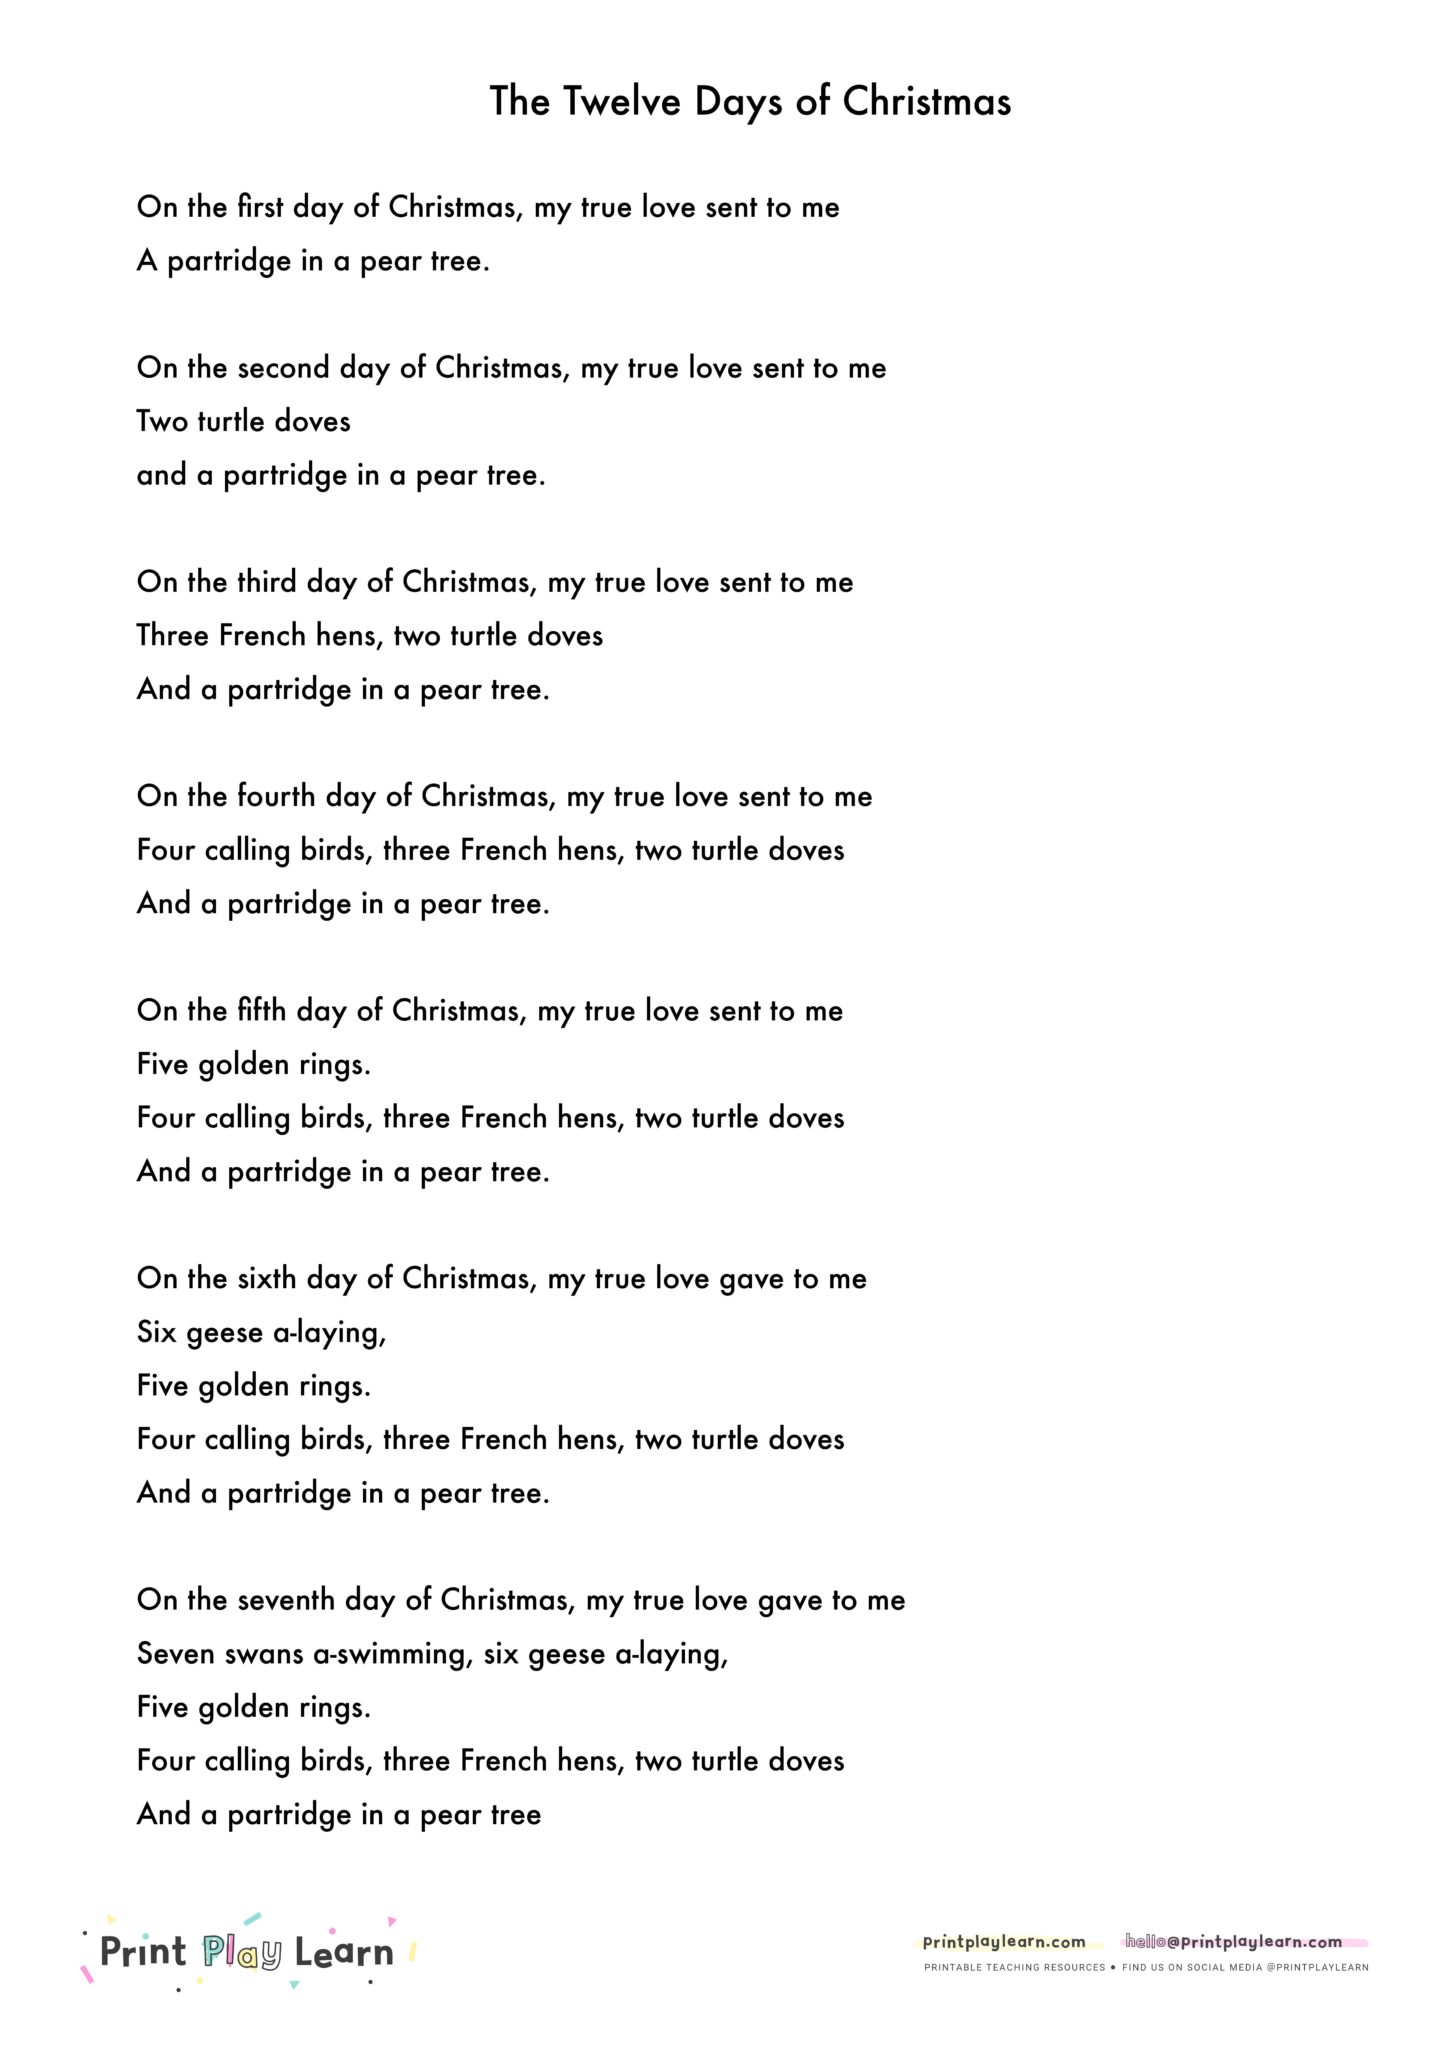 Printable Lyrics 12 Days Of Christmas